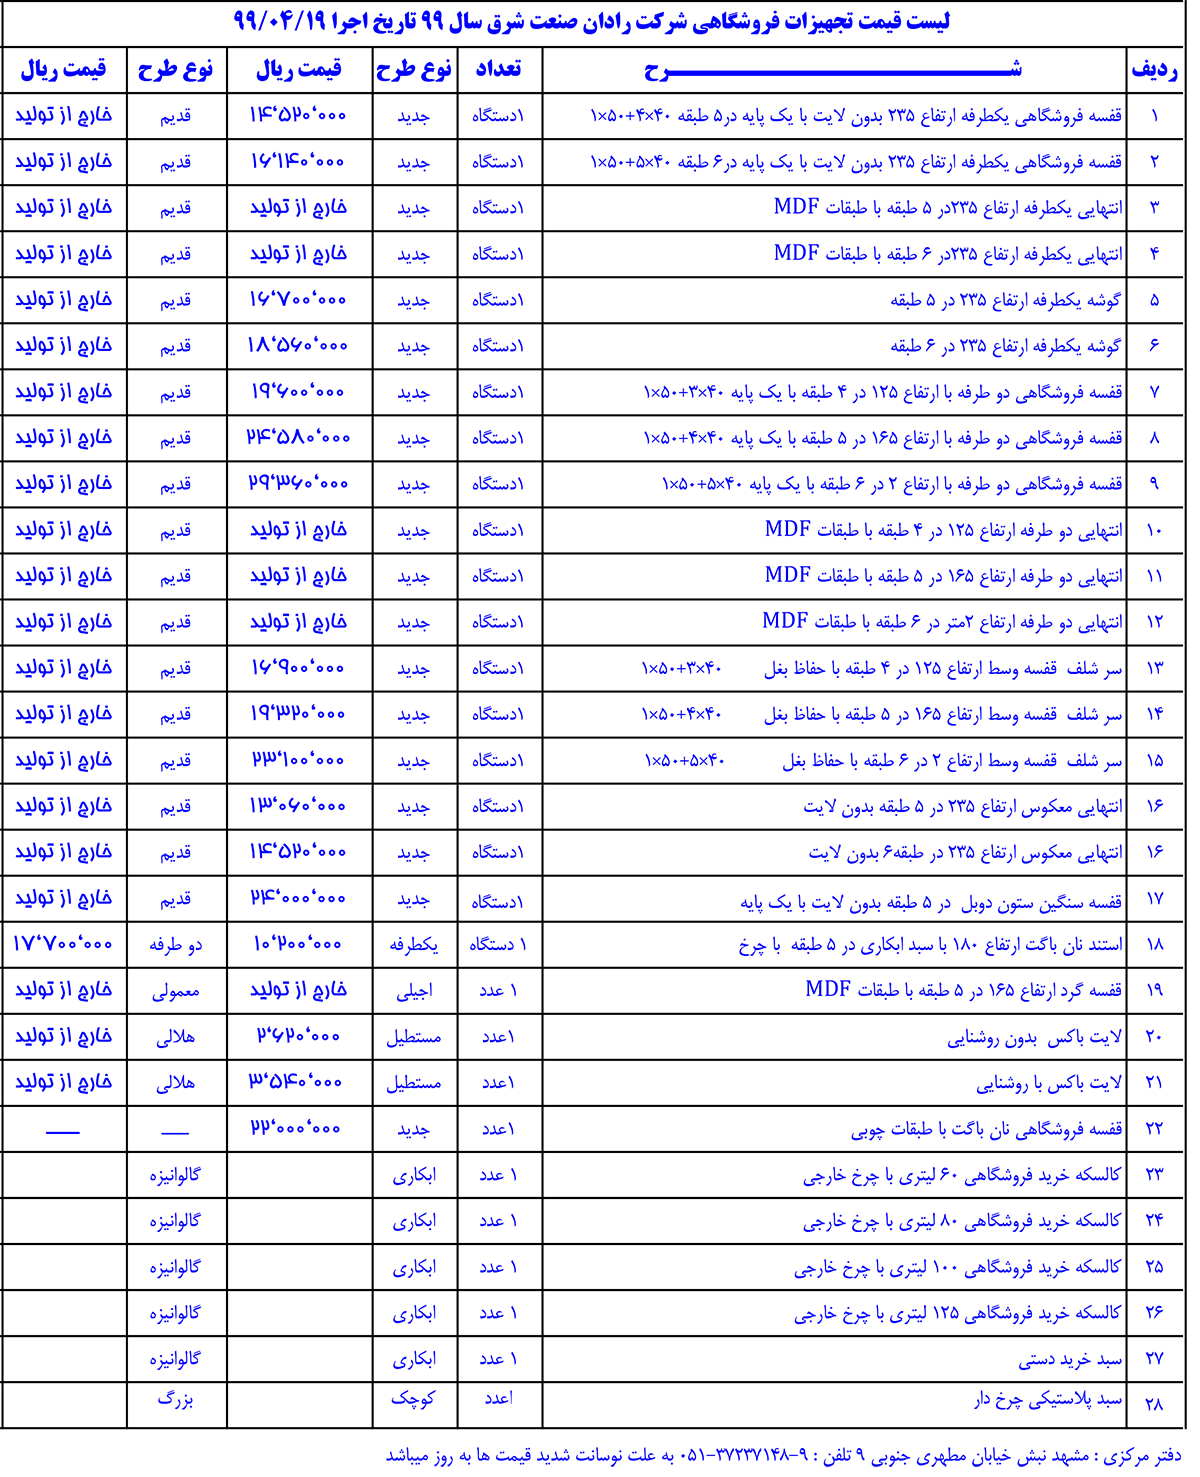 لیست قیمت تجهیزات فروشگاهی شرکت رادان صنعت شرق سال 99 تاریخ اجرا 1399/04/19